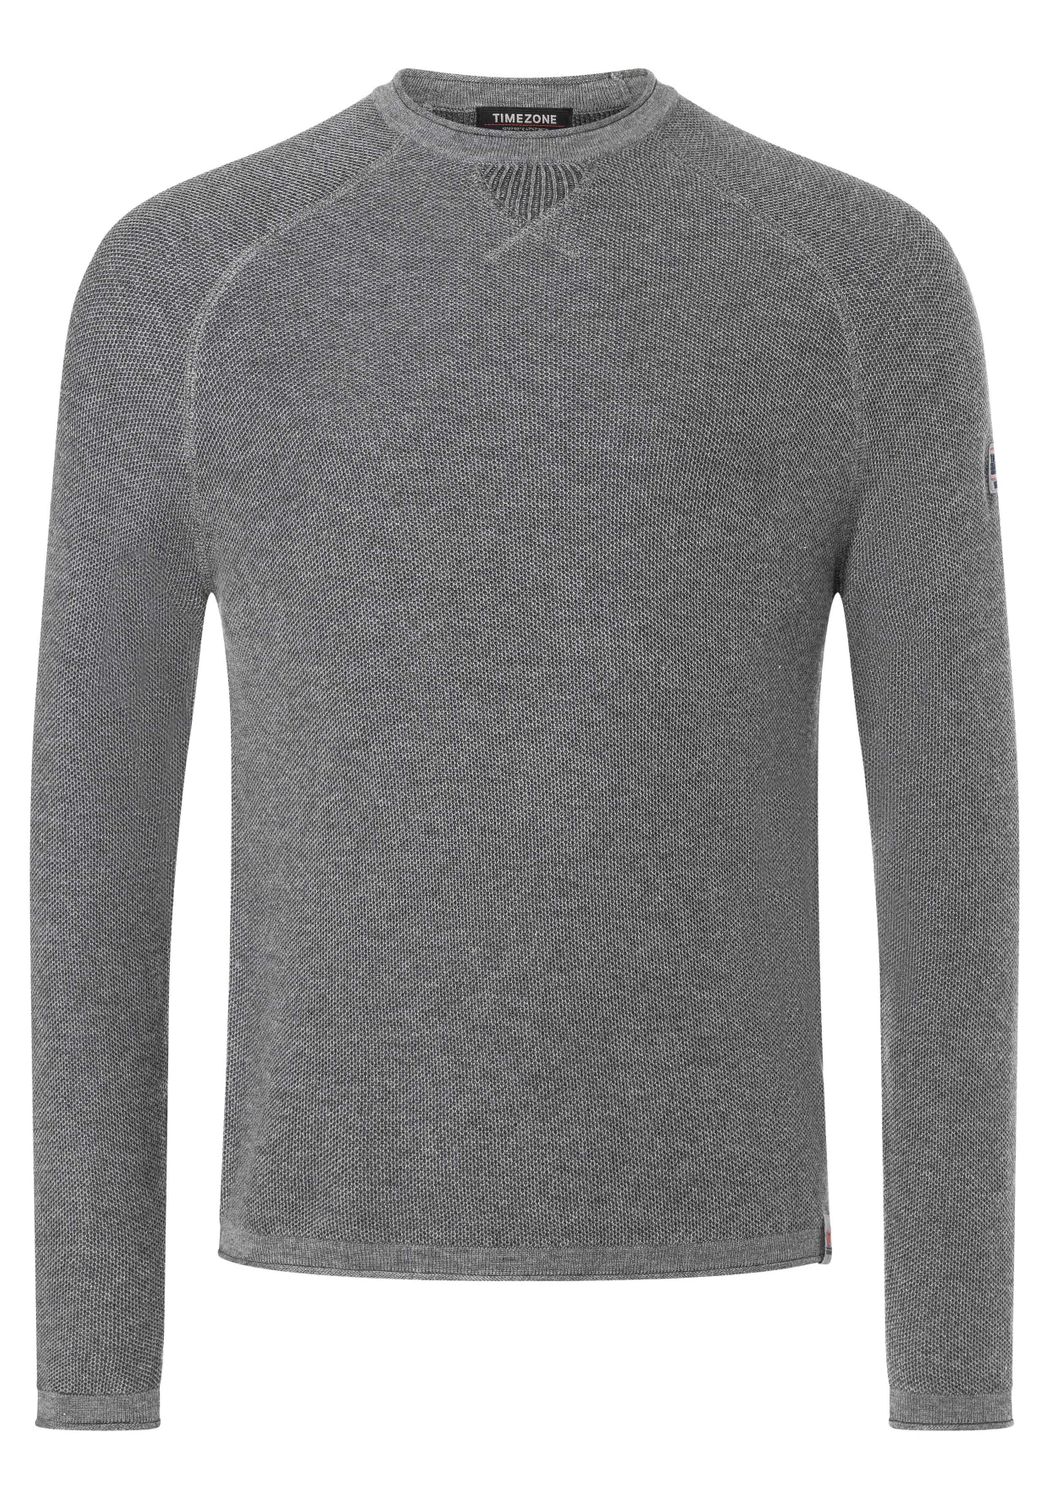 Пуловер Timezone SPIRAL KNIT CREWNECK, серый пуловер carhartt lightweight crewneck серый